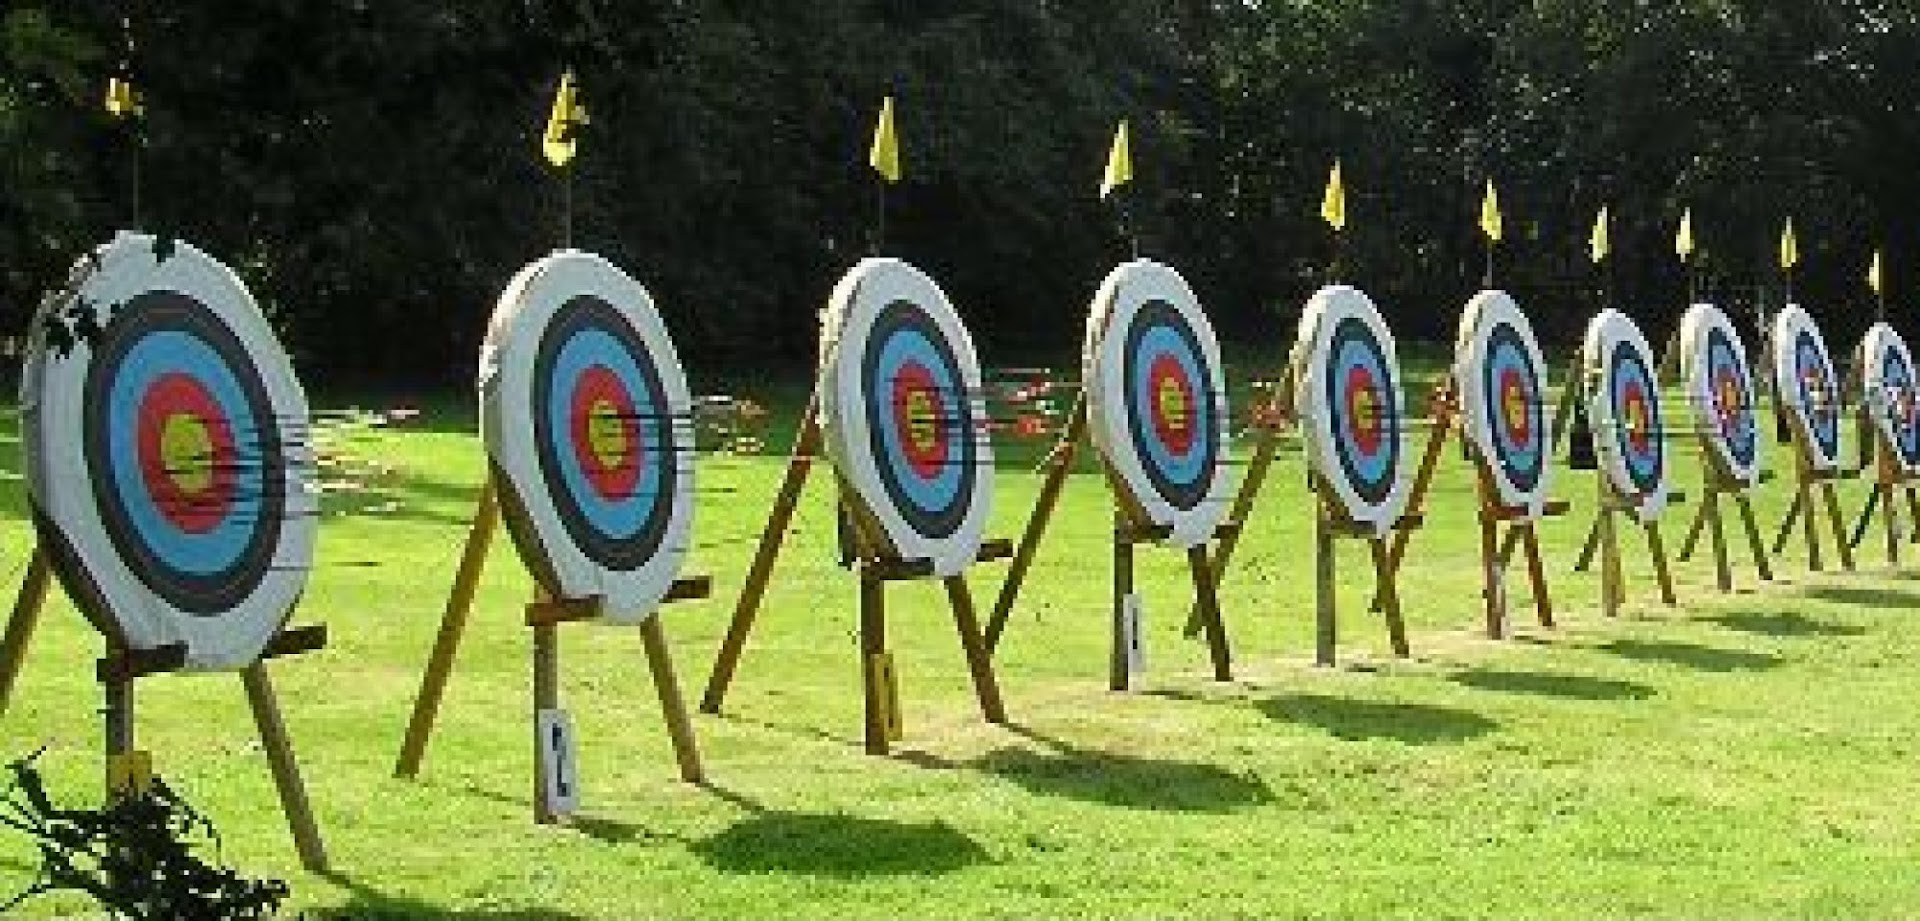 Bournemouth Archery Club